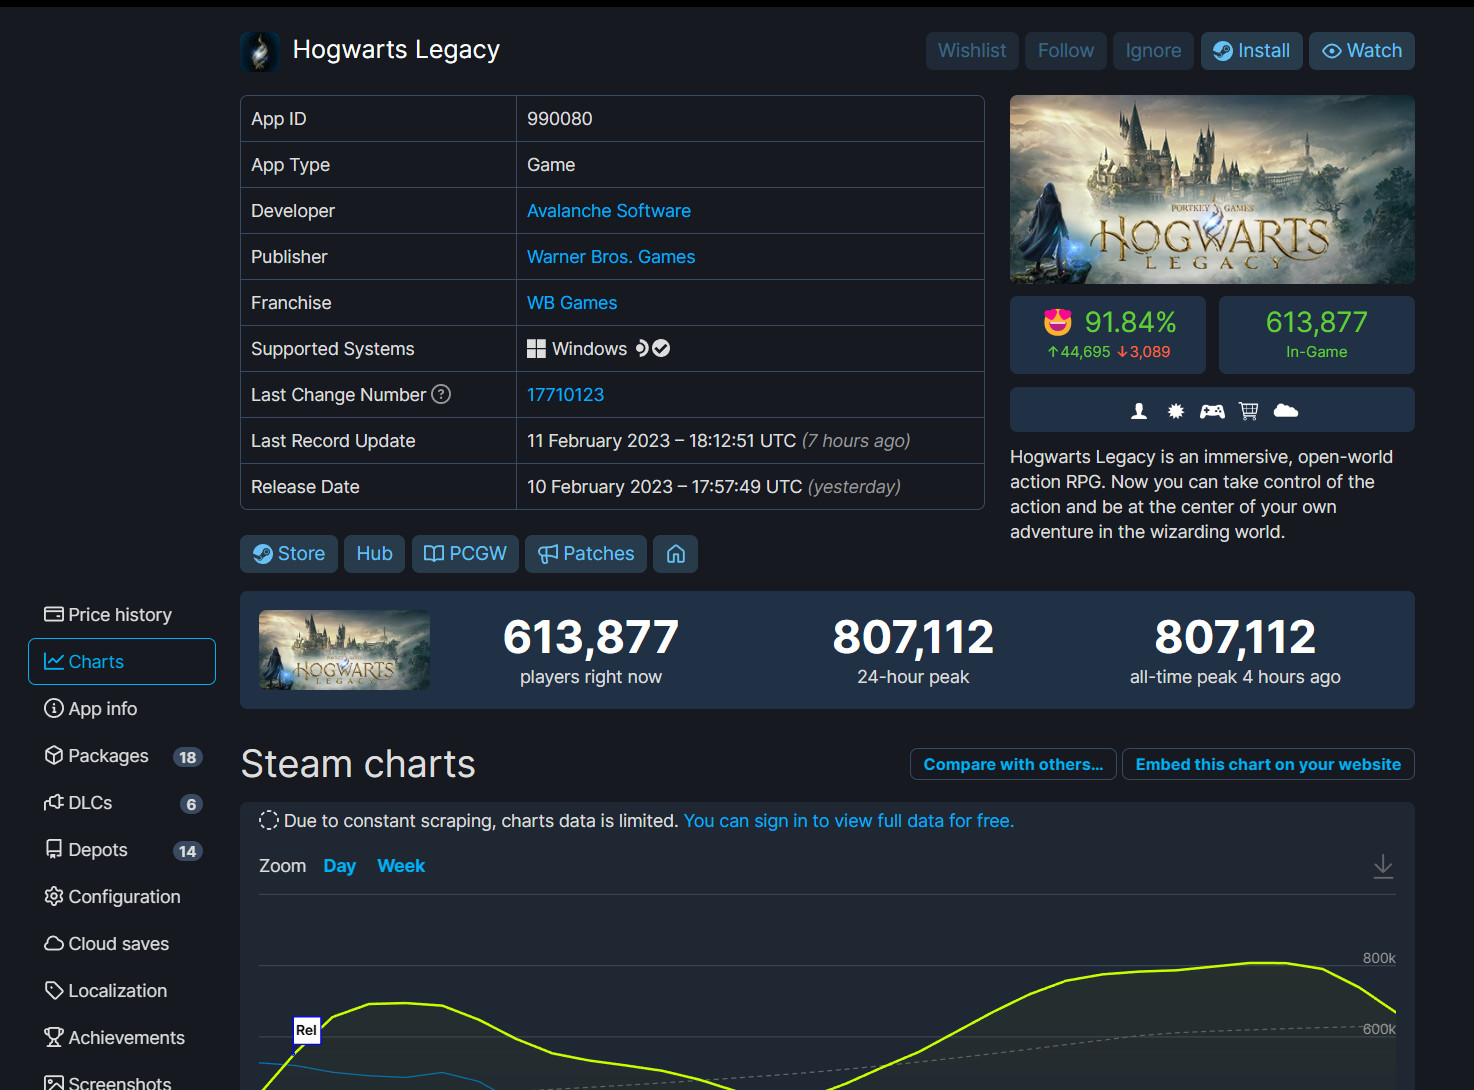 《霍格沃茨之遗》Steam在线超80万 MTC玩家评分9.2分